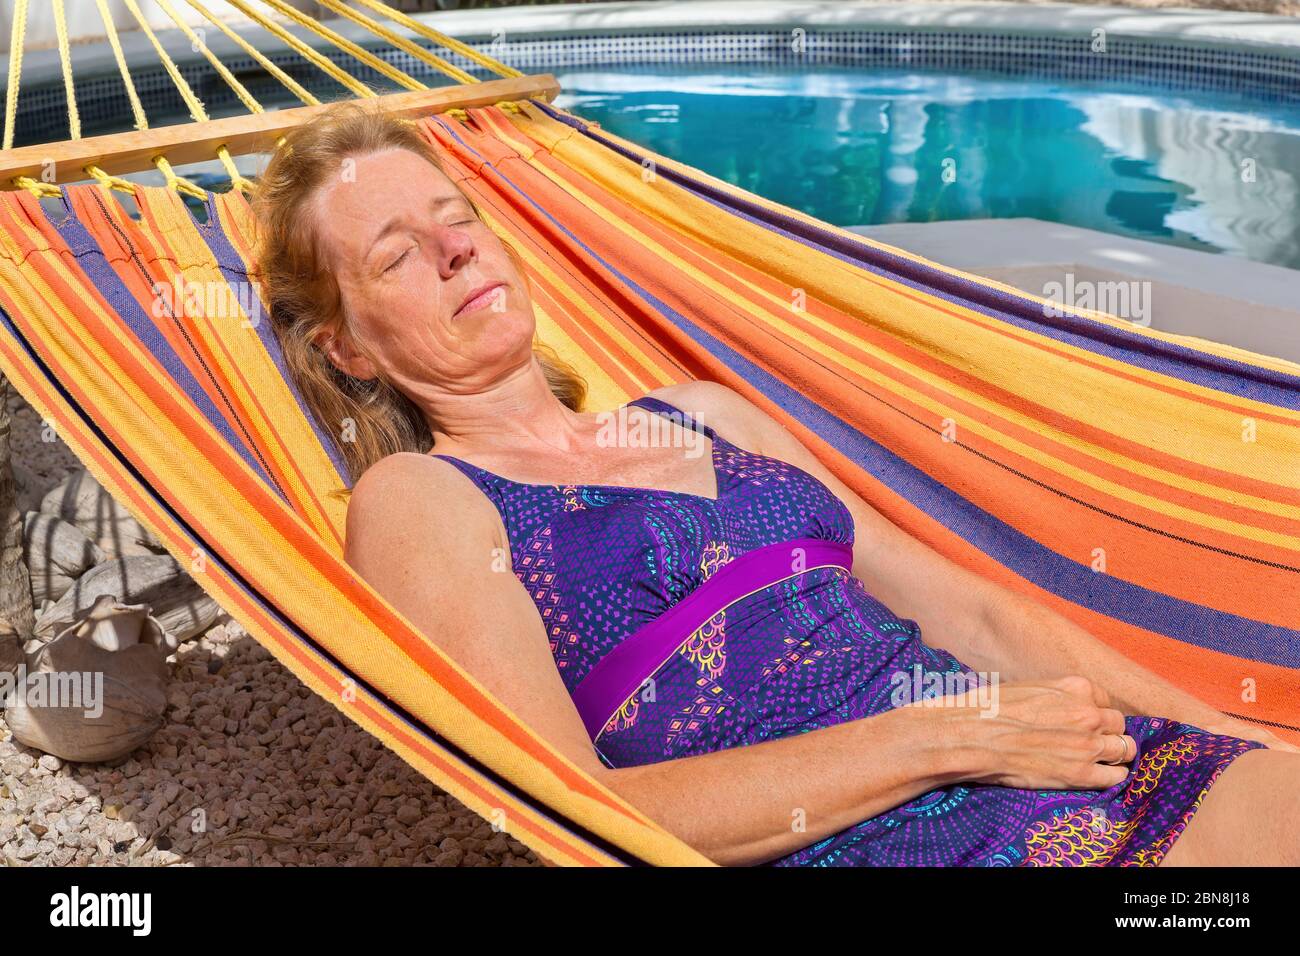 Femme hollandaise d'âge moyen, située dans un hamac coloré près de la piscine Banque D'Images